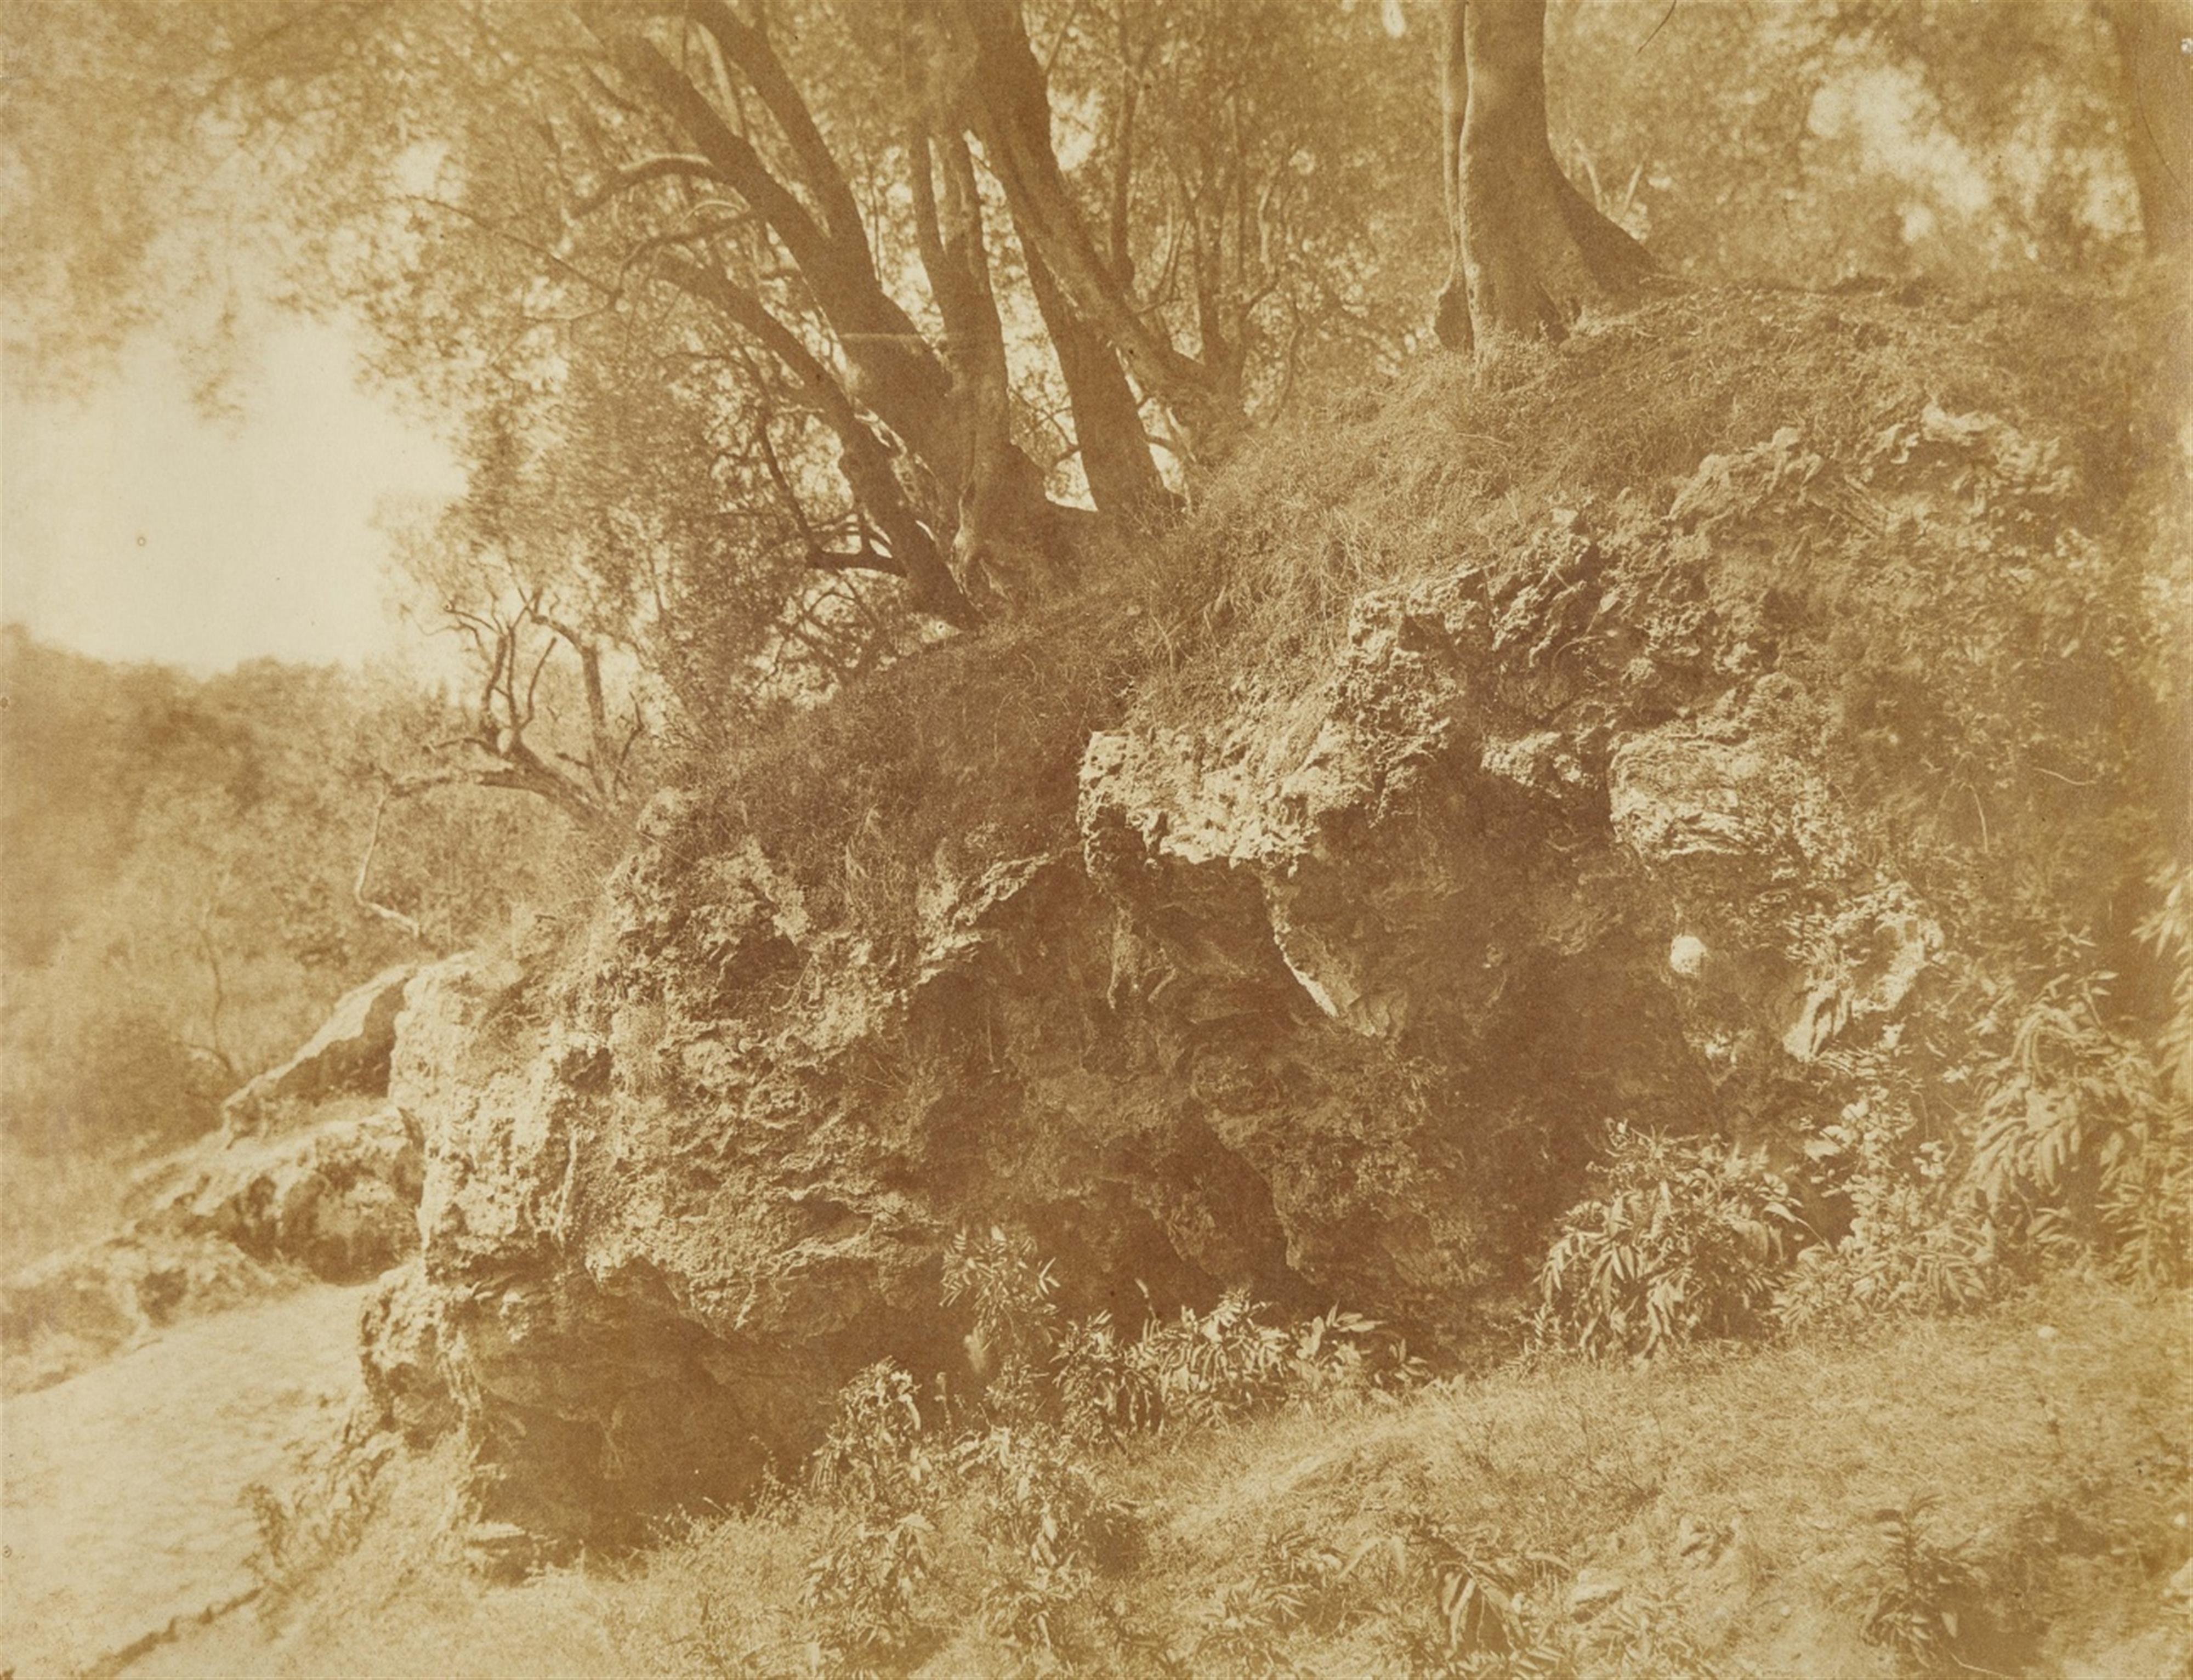 Giacomo Caneva - Study with Rocks and Trees, Campagna Romana - image-1